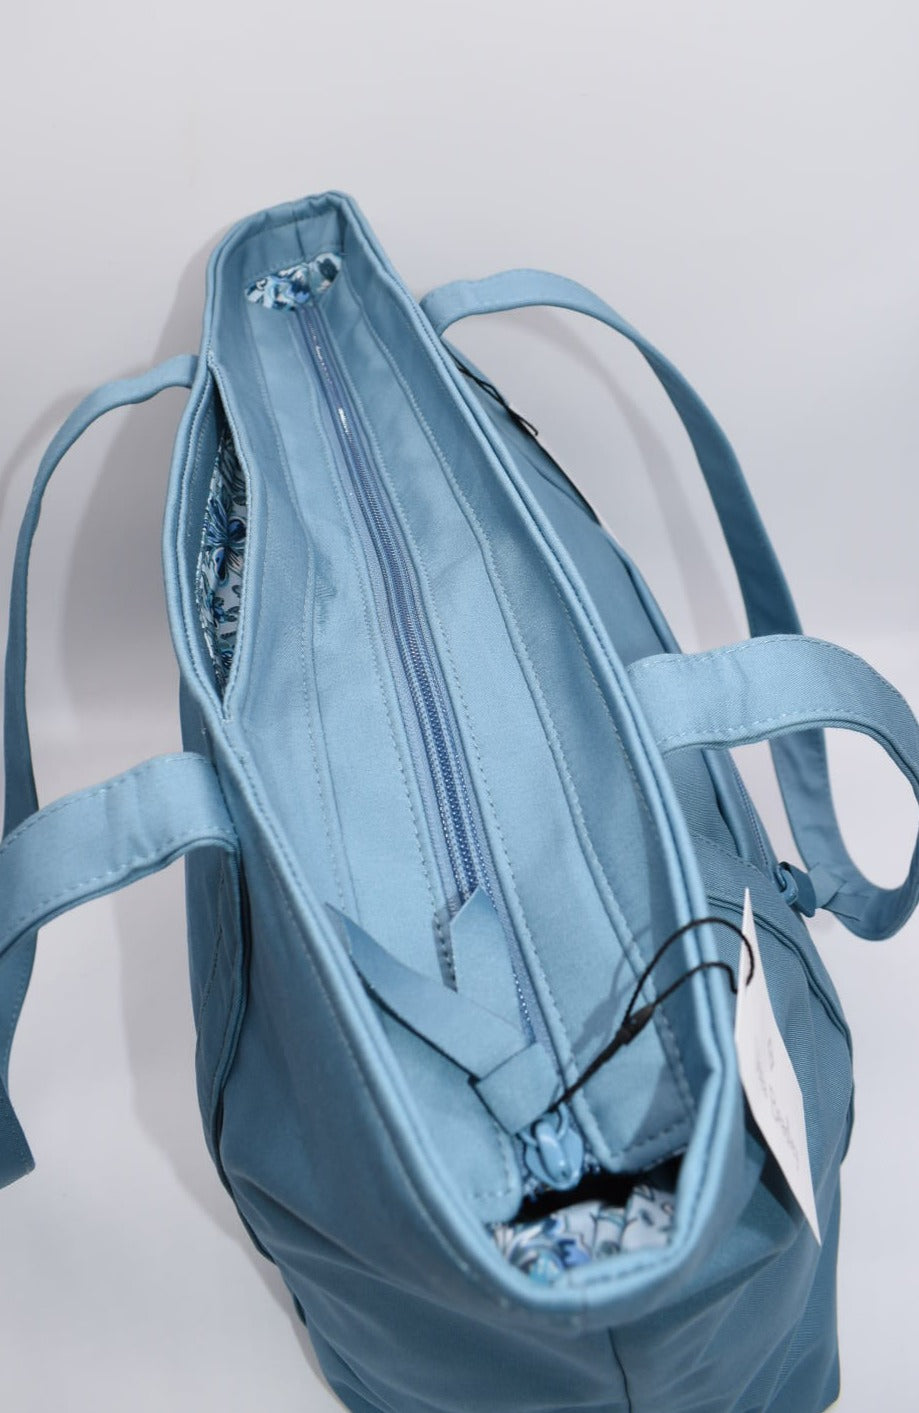 Vera Bradley Large Vera Tote Bag in "Reef Water Blue" Pattern